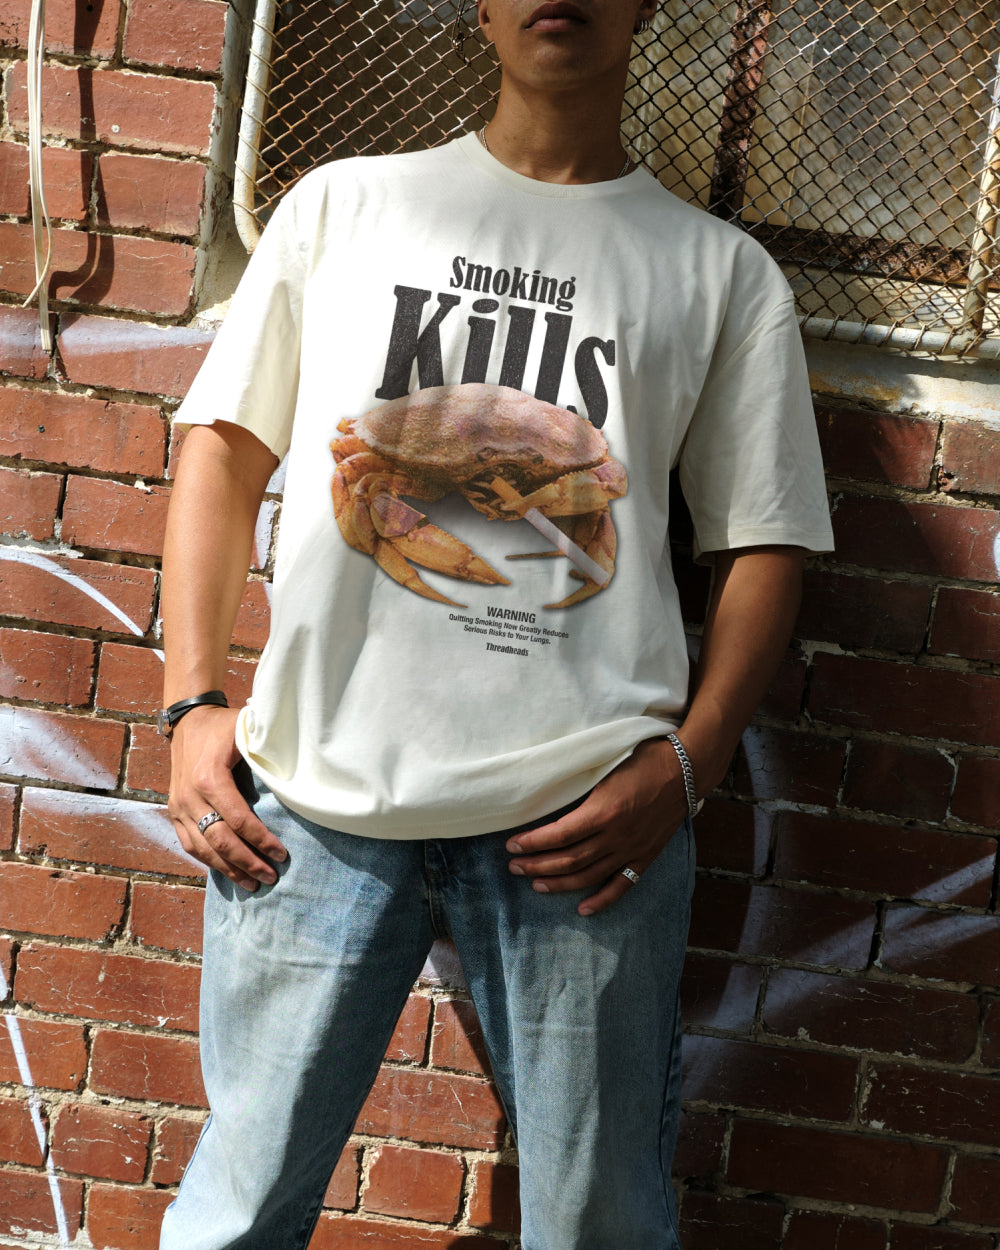 Smoking Kills T-Shirt